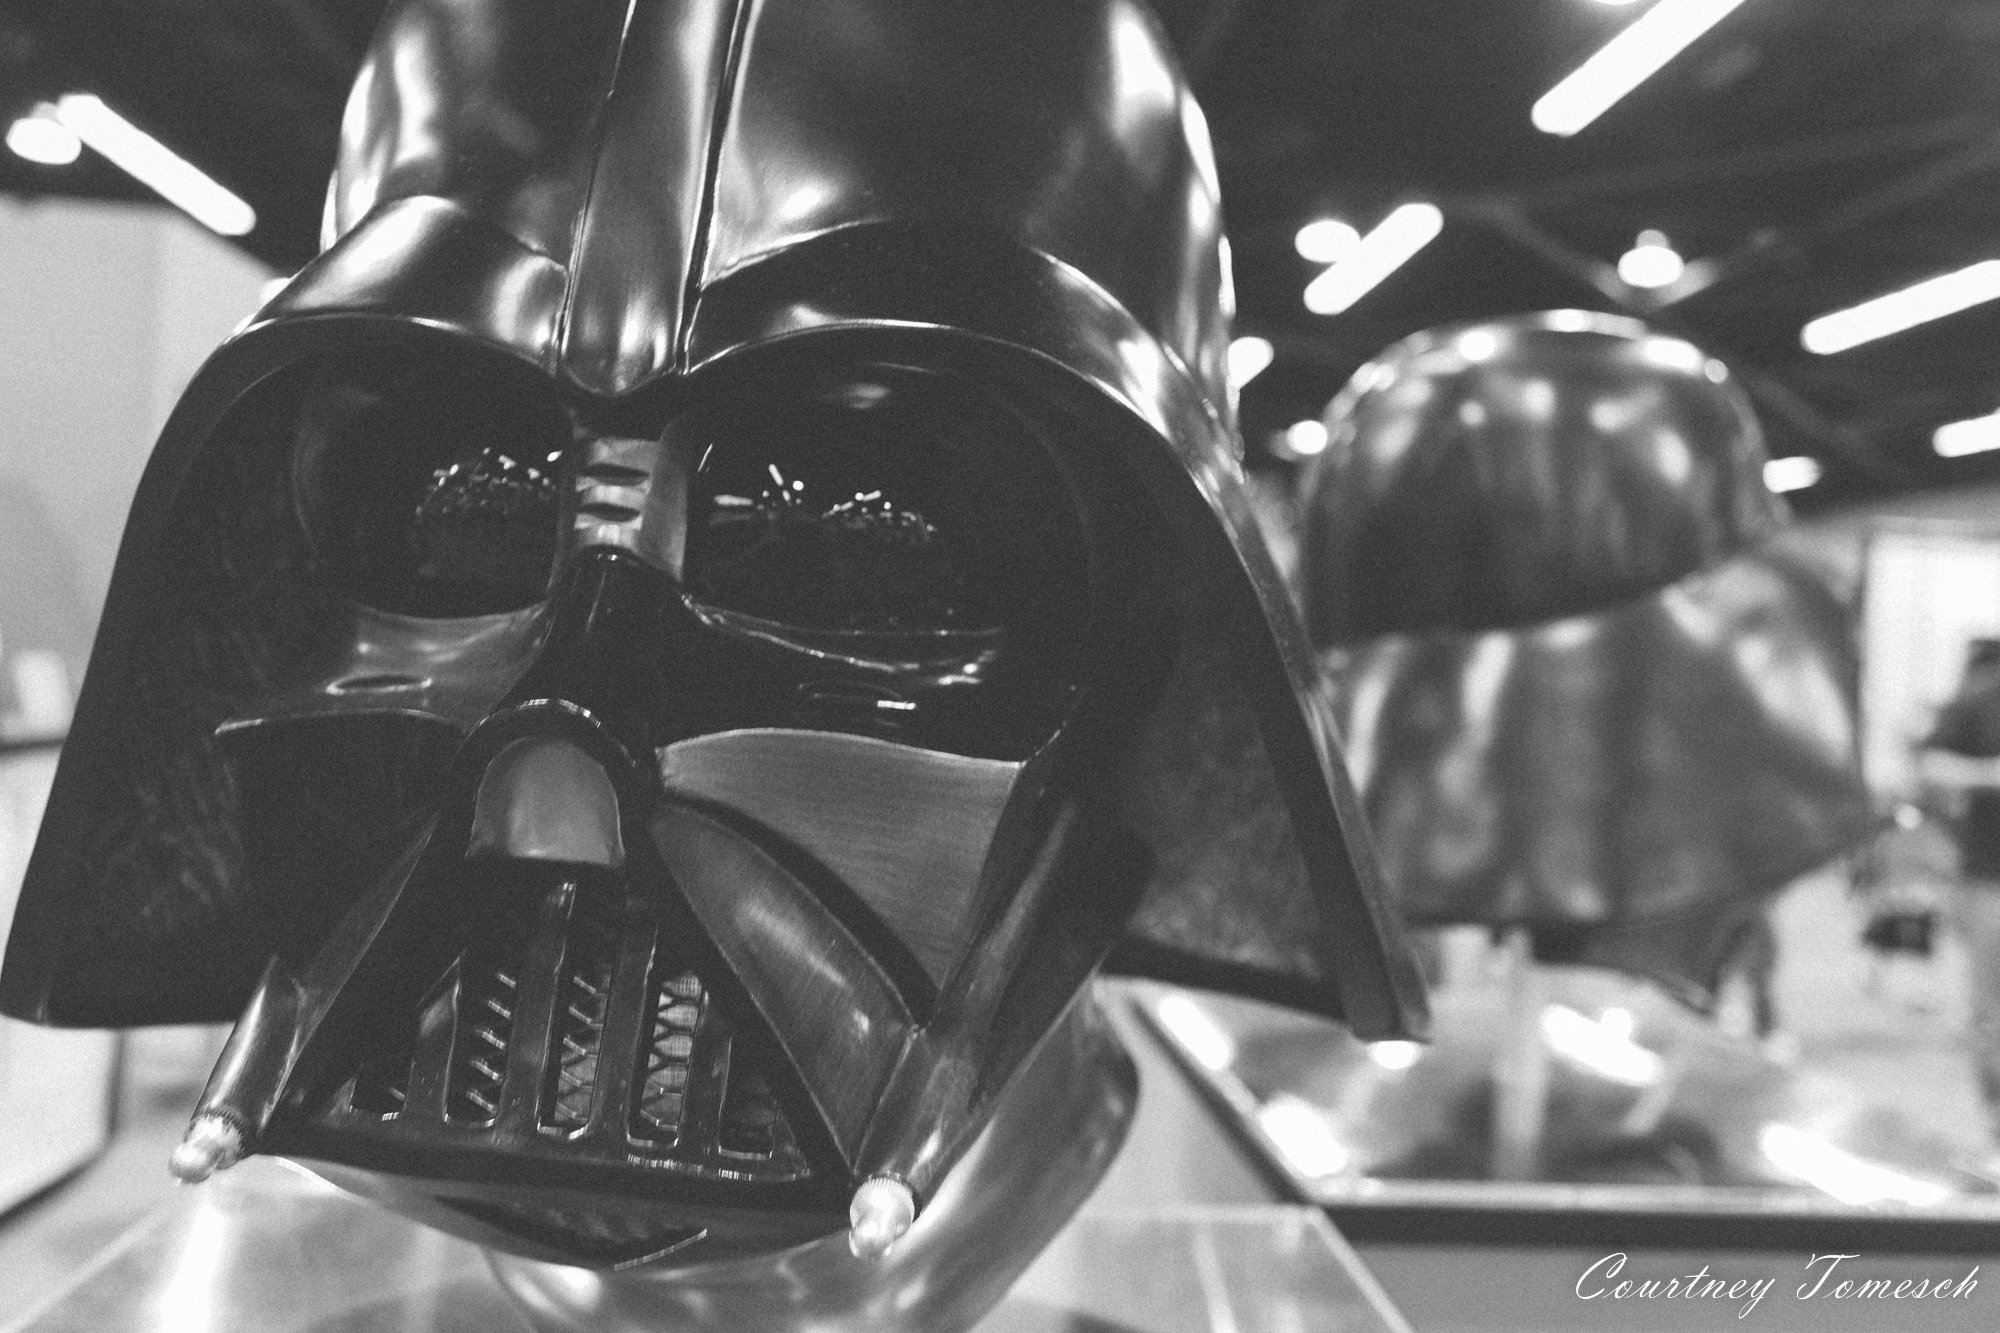  Darth Vader Helmet